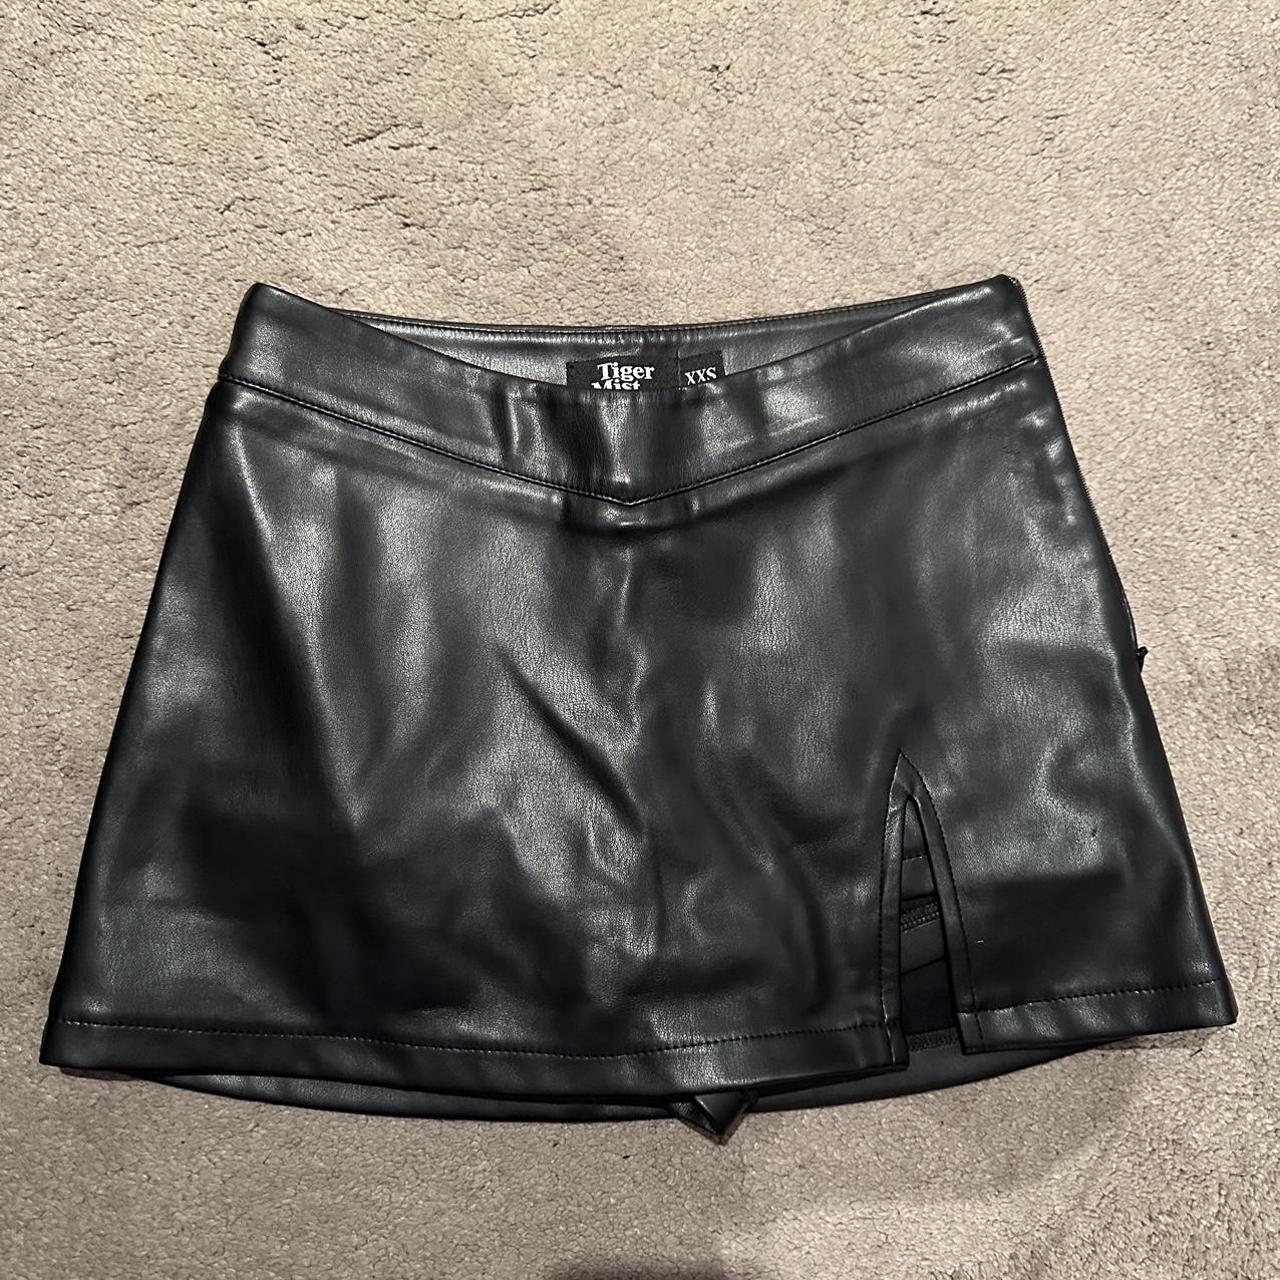 Tiger Mist Leather Skirt/Skort Shorts underneath... - Depop